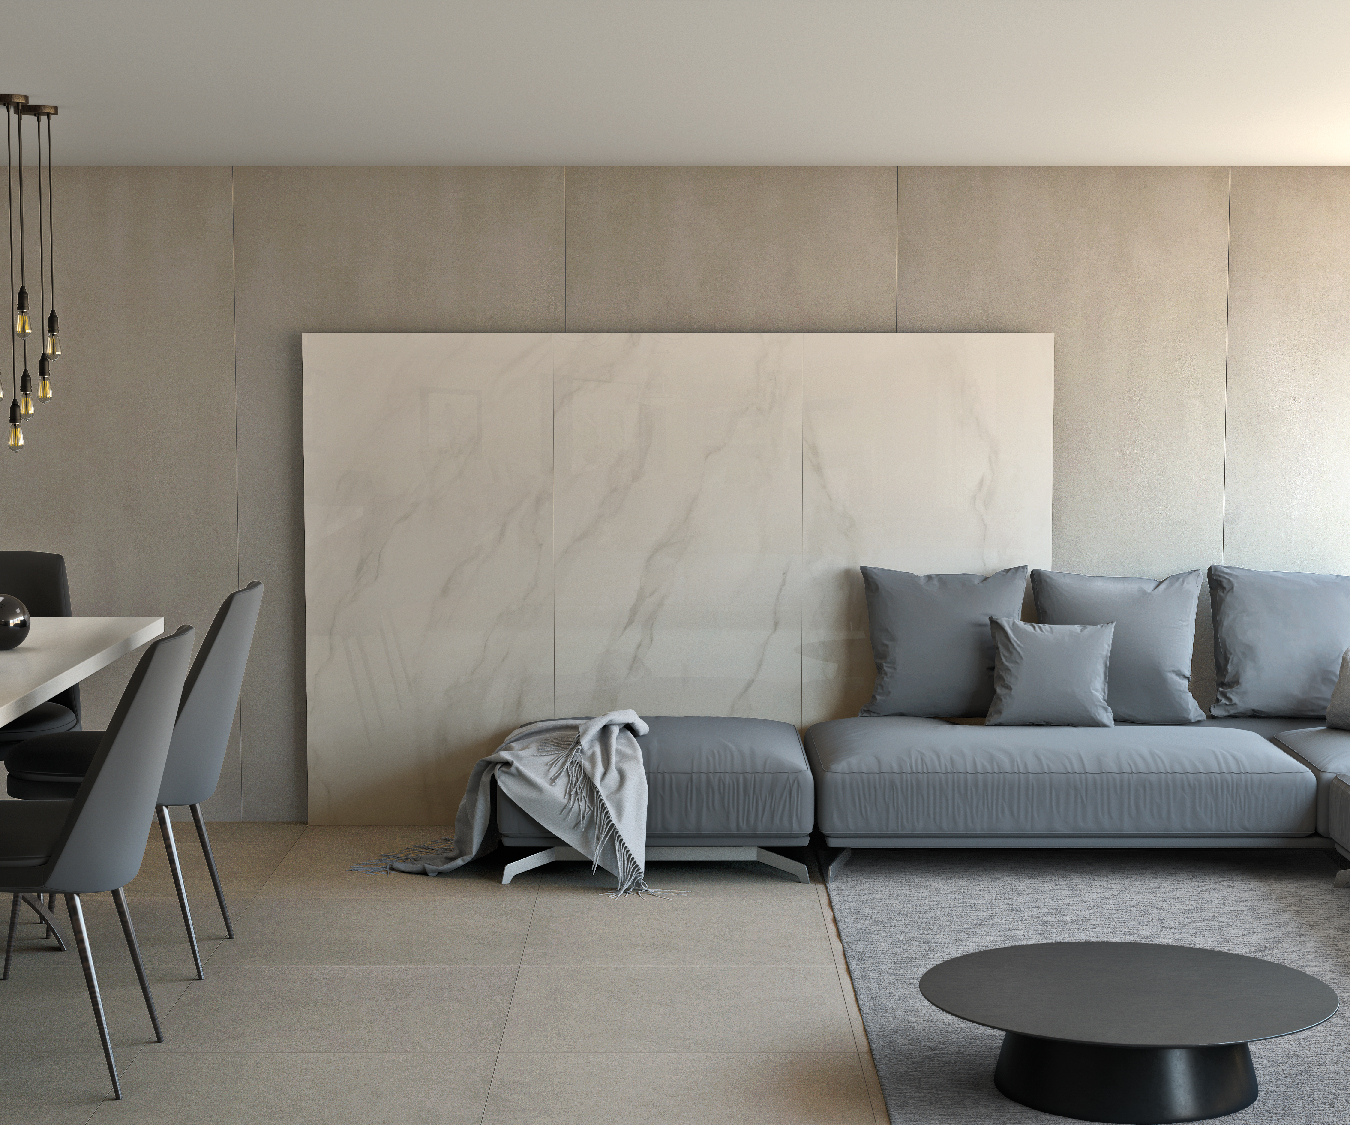 Unir salas de estar e jantar é comum em ambientes integrados (Projeto com lastras Portobello)